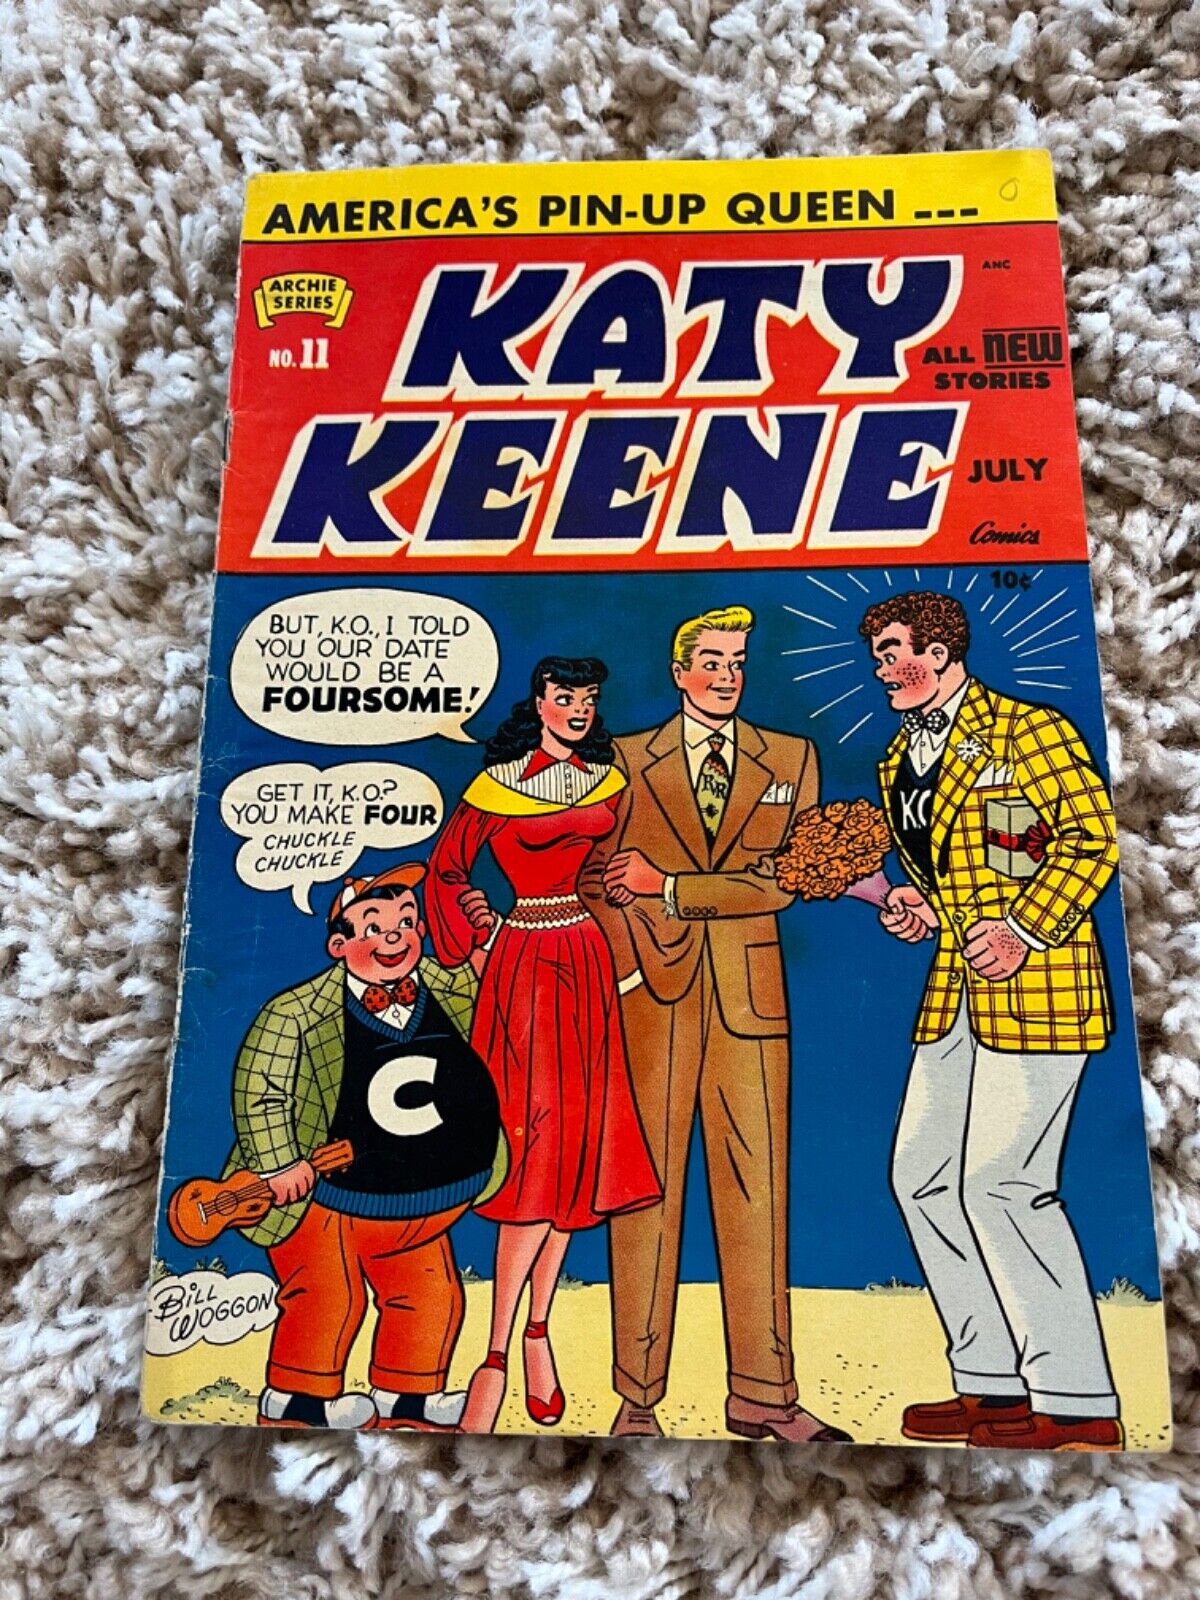 Katy Keene #11 FN/VF 7.0 1953